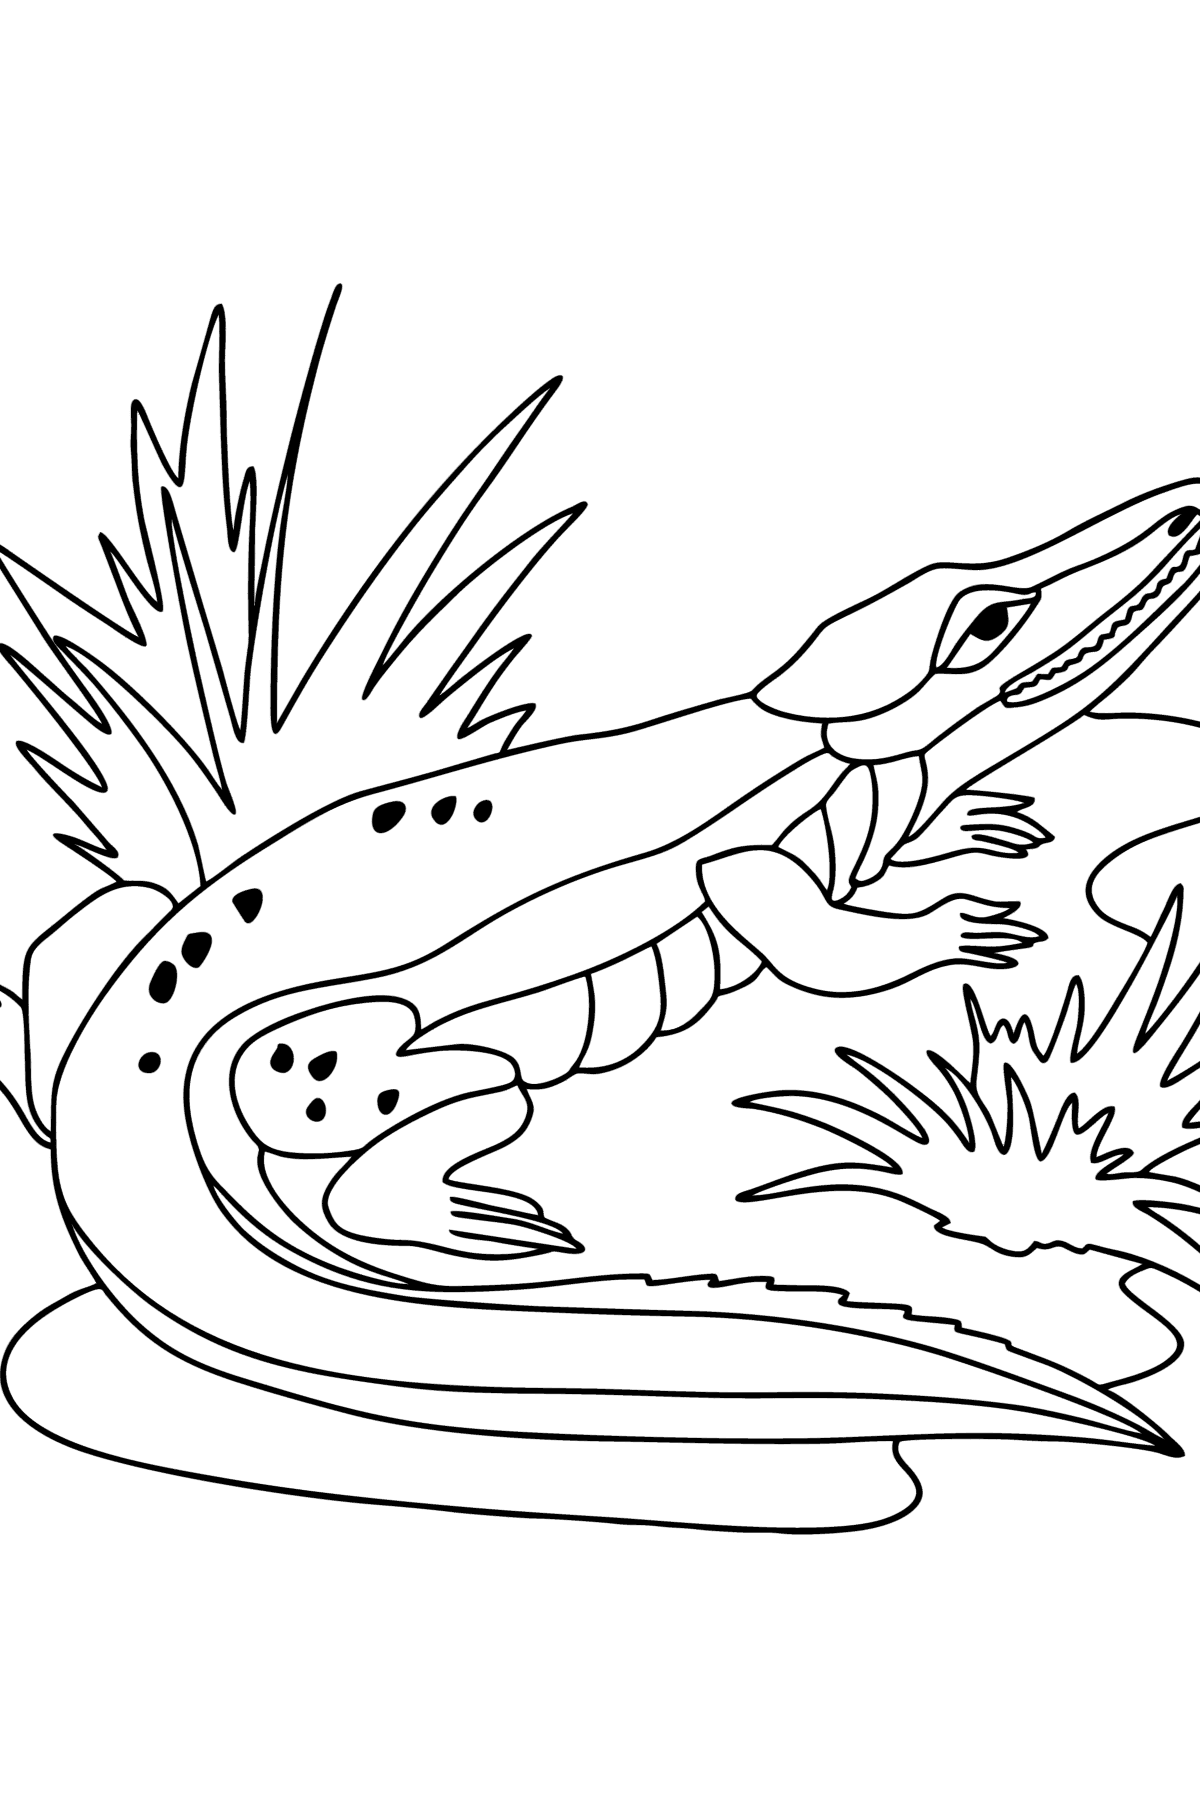 Раскраска Крокодил Джунгли - Картинки для Детей